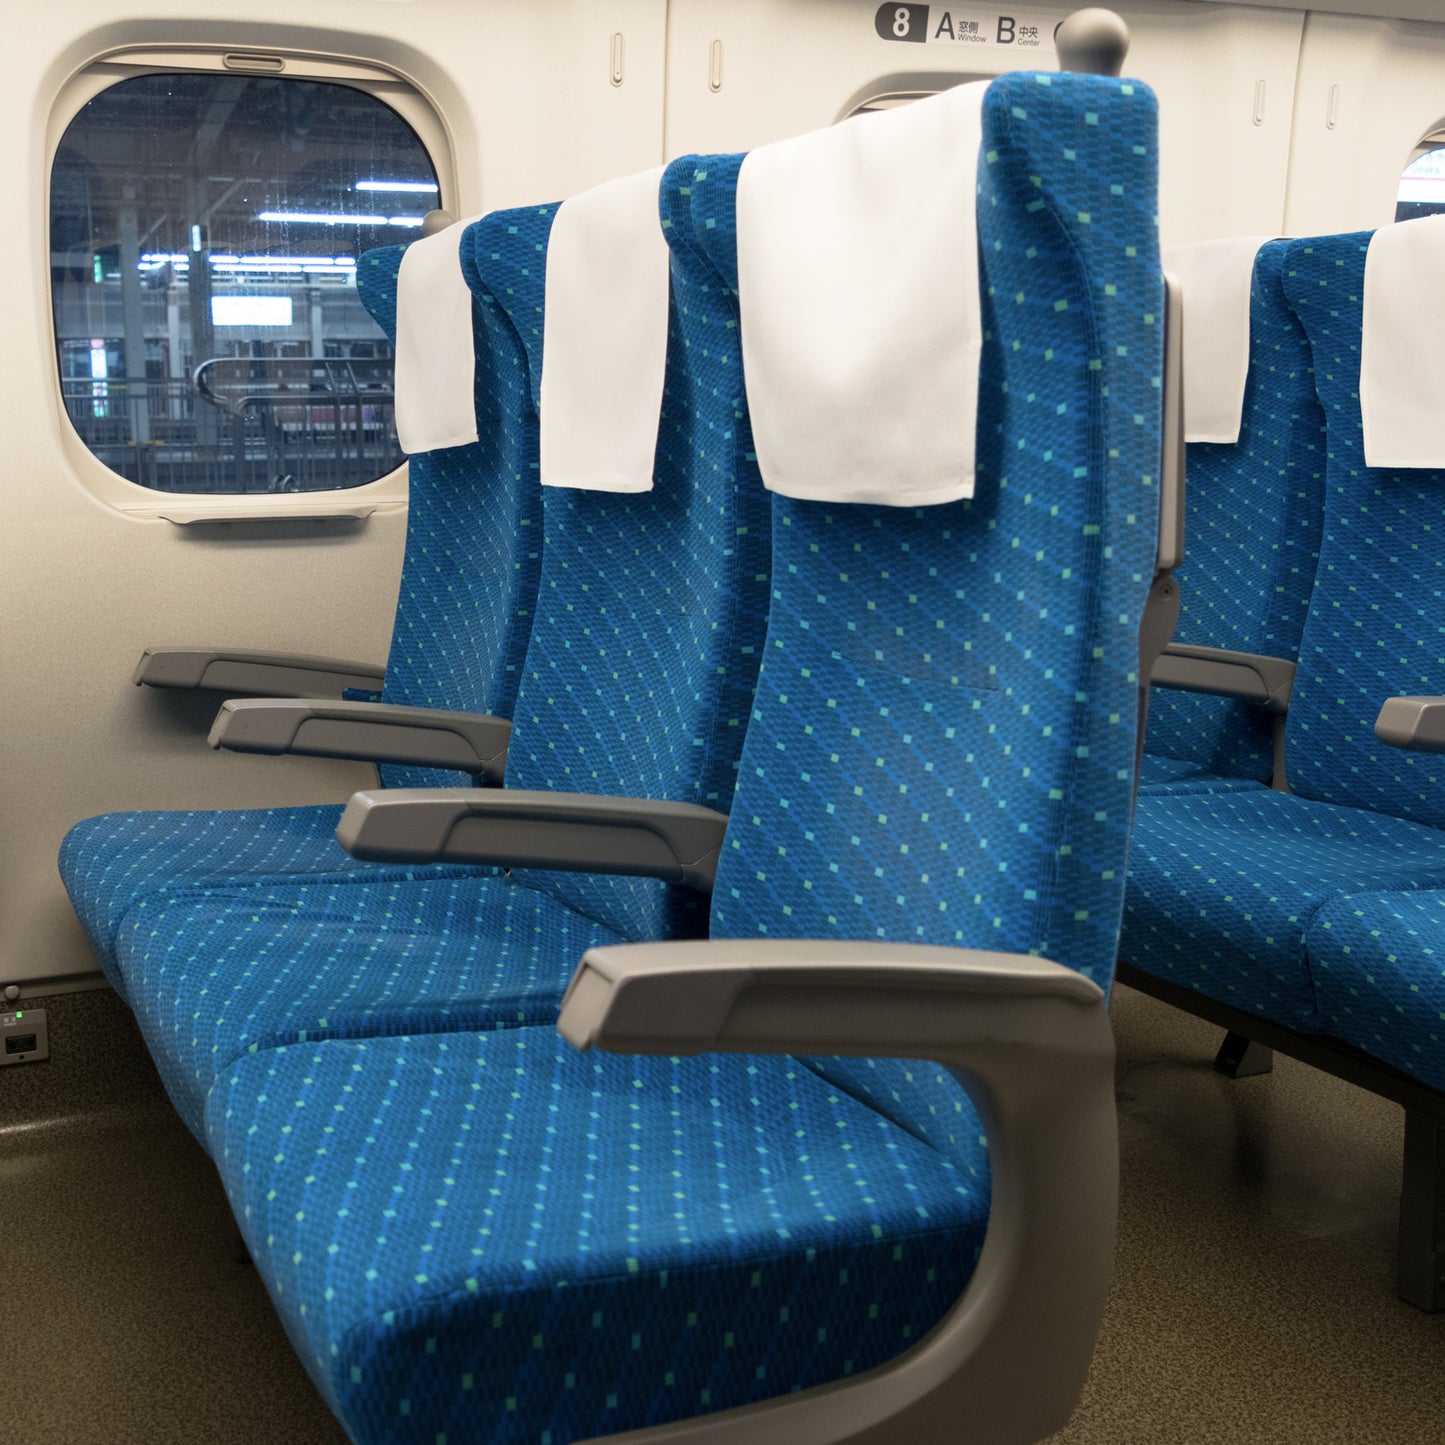 東海道新幹線N700系typeAの普通車座席